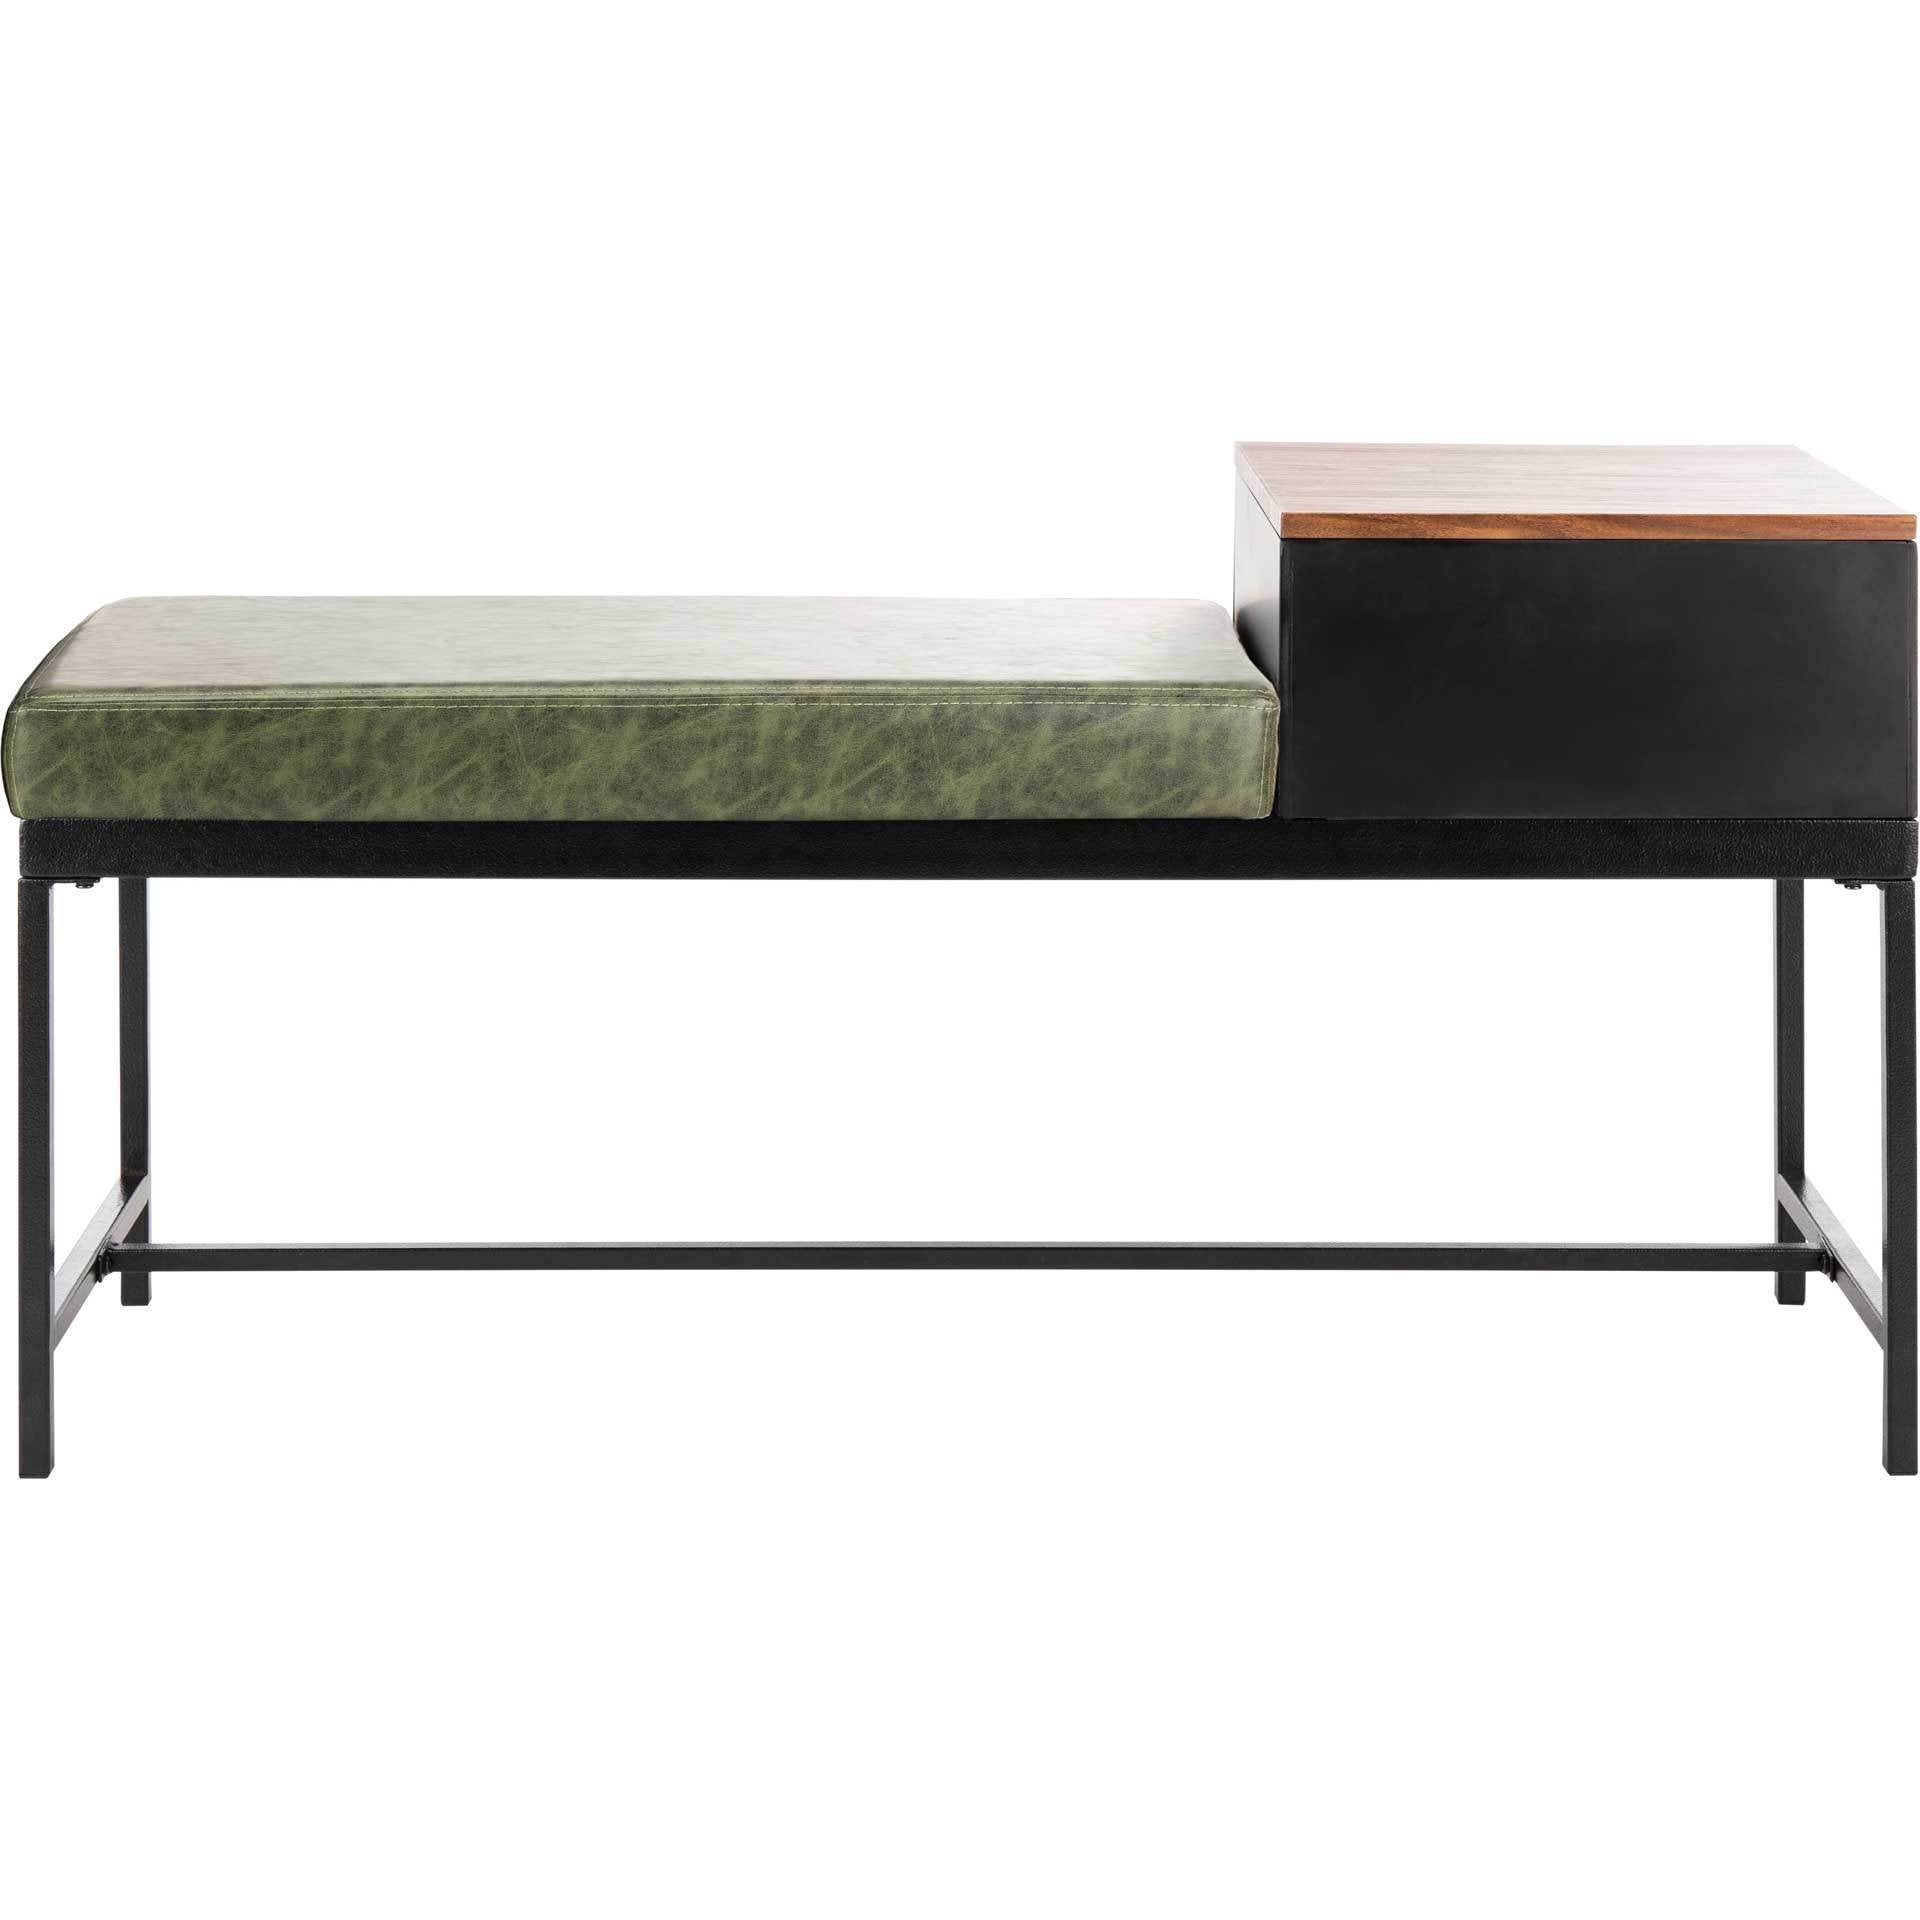 Maxton Bench With Storage Gray Wash/Dark Green